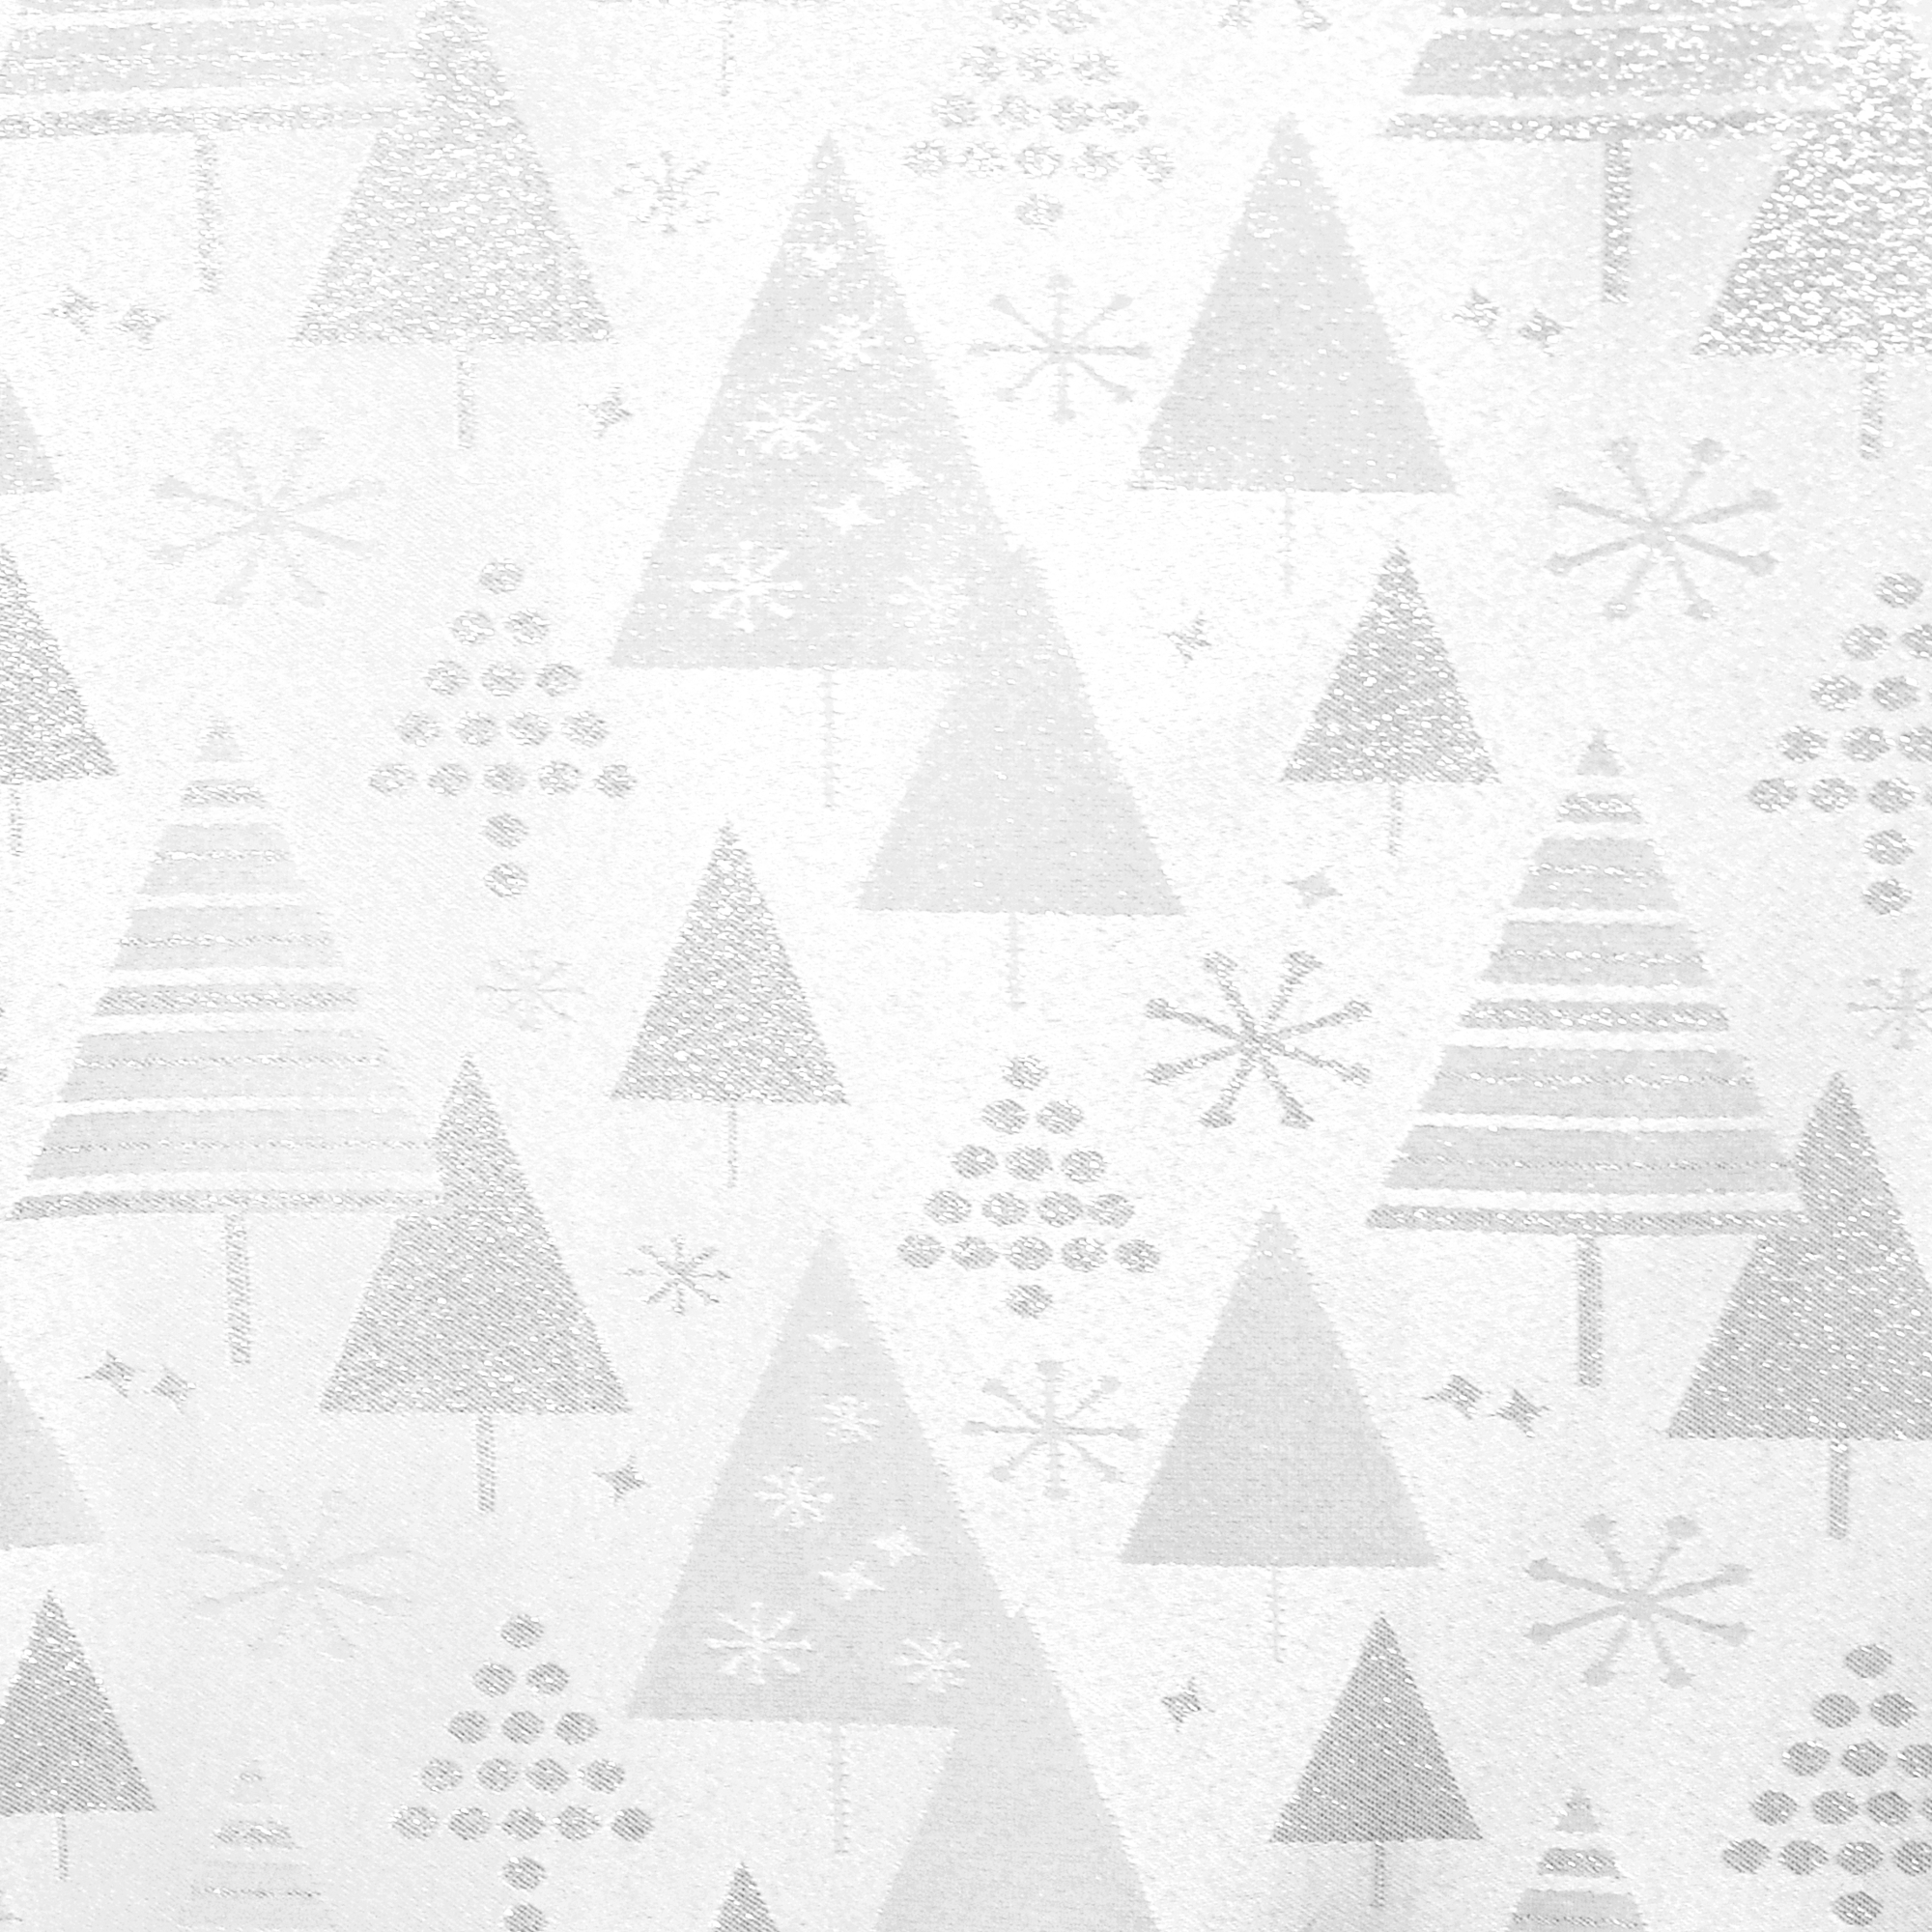 Tischdecken Weihnachten Lurex-Tannen Silber-Weiss Glanzeffekt mit